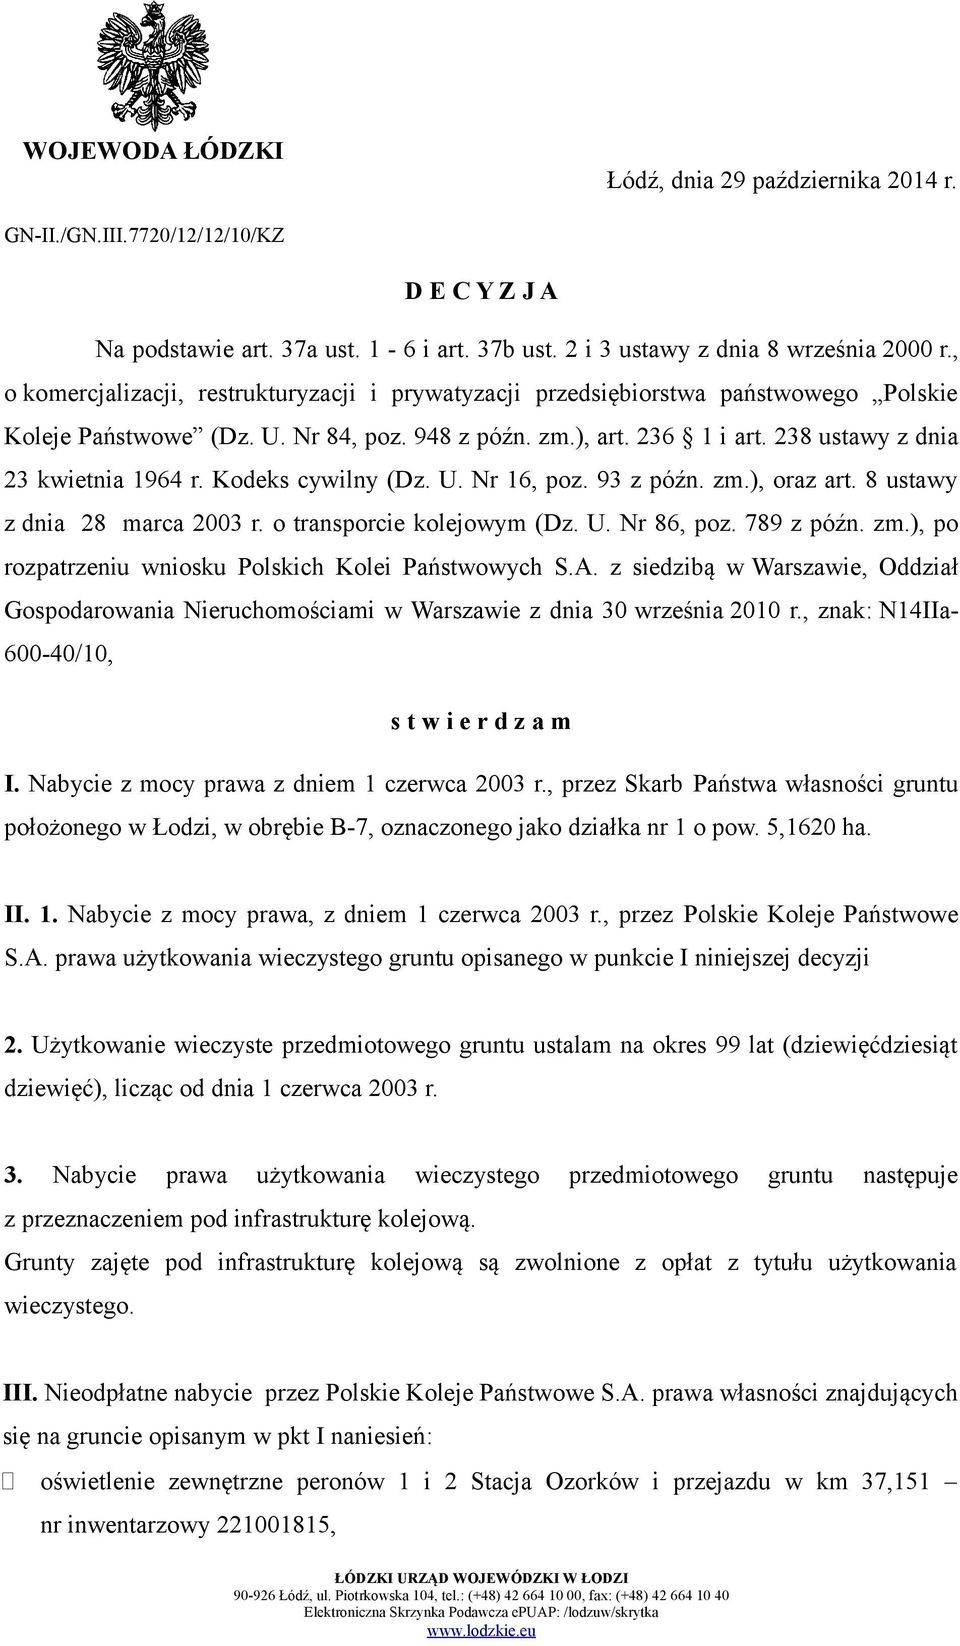 Kodeks cywilny (Dz. U. Nr 16, poz. 93 z późn. zm.), oraz art. 8 ustawy z dnia 28 marca 2003 r. o transporcie kolejowym (Dz. U. Nr 86, poz. 789 z późn. zm.), po rozpatrzeniu wniosku Polskich Kolei Państwowych S.